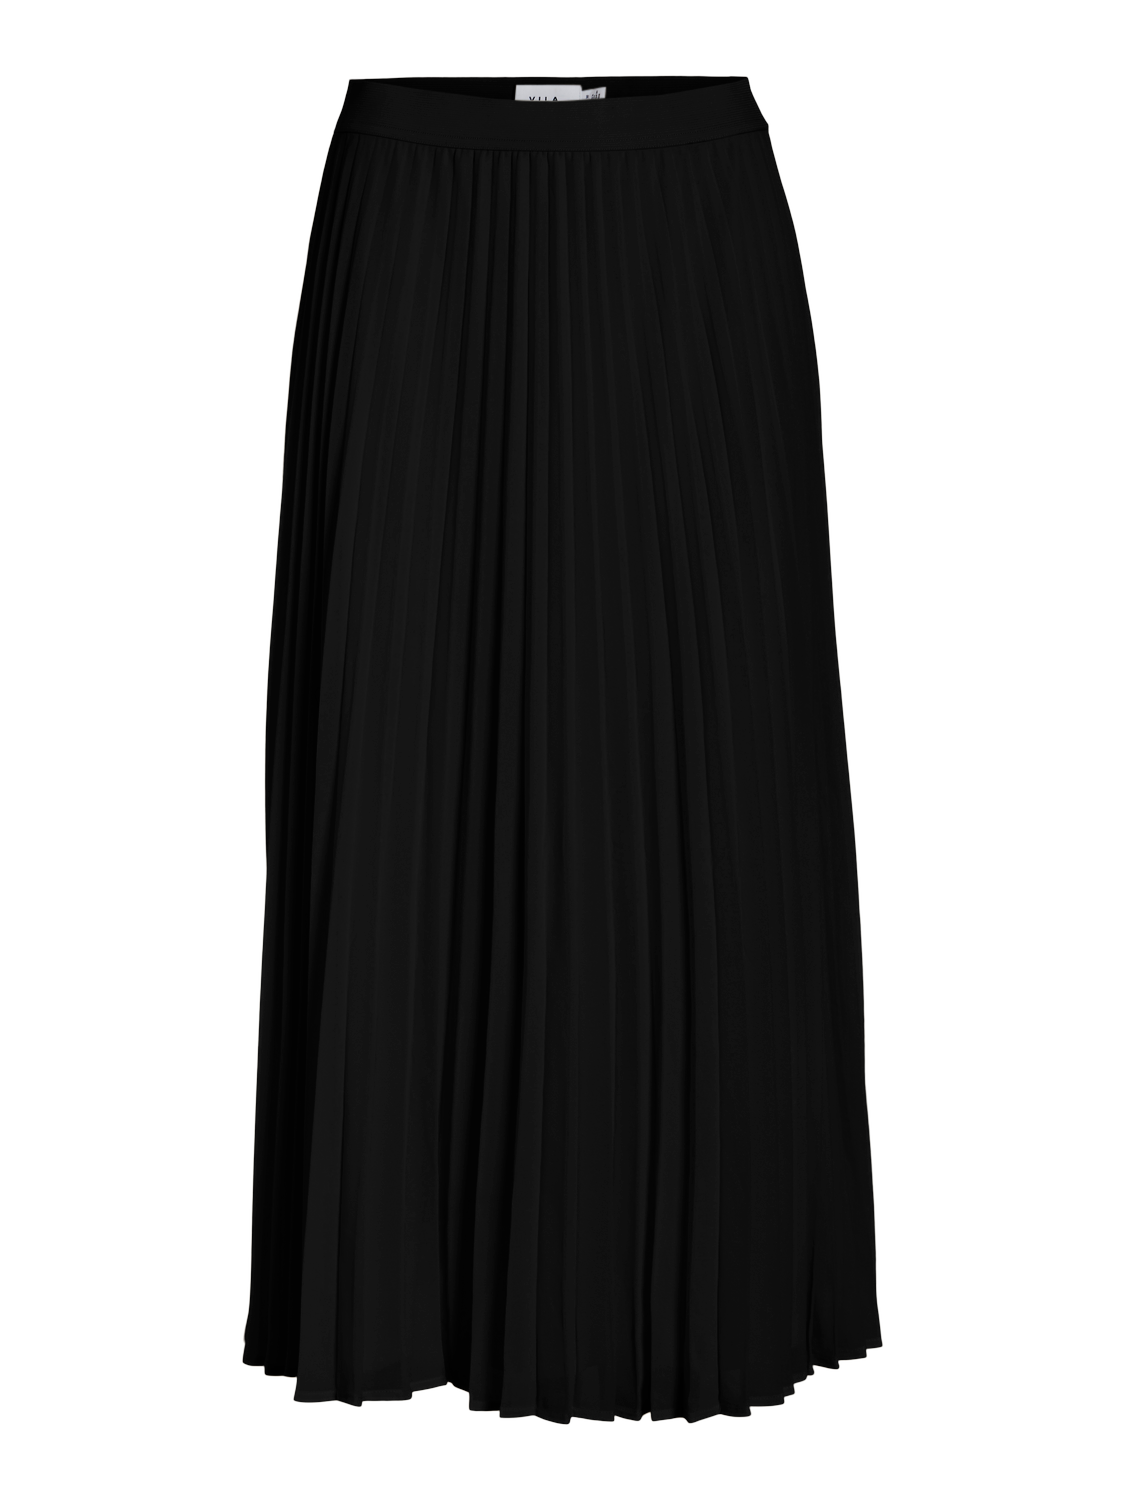 VIAMIGA Skirt - Black